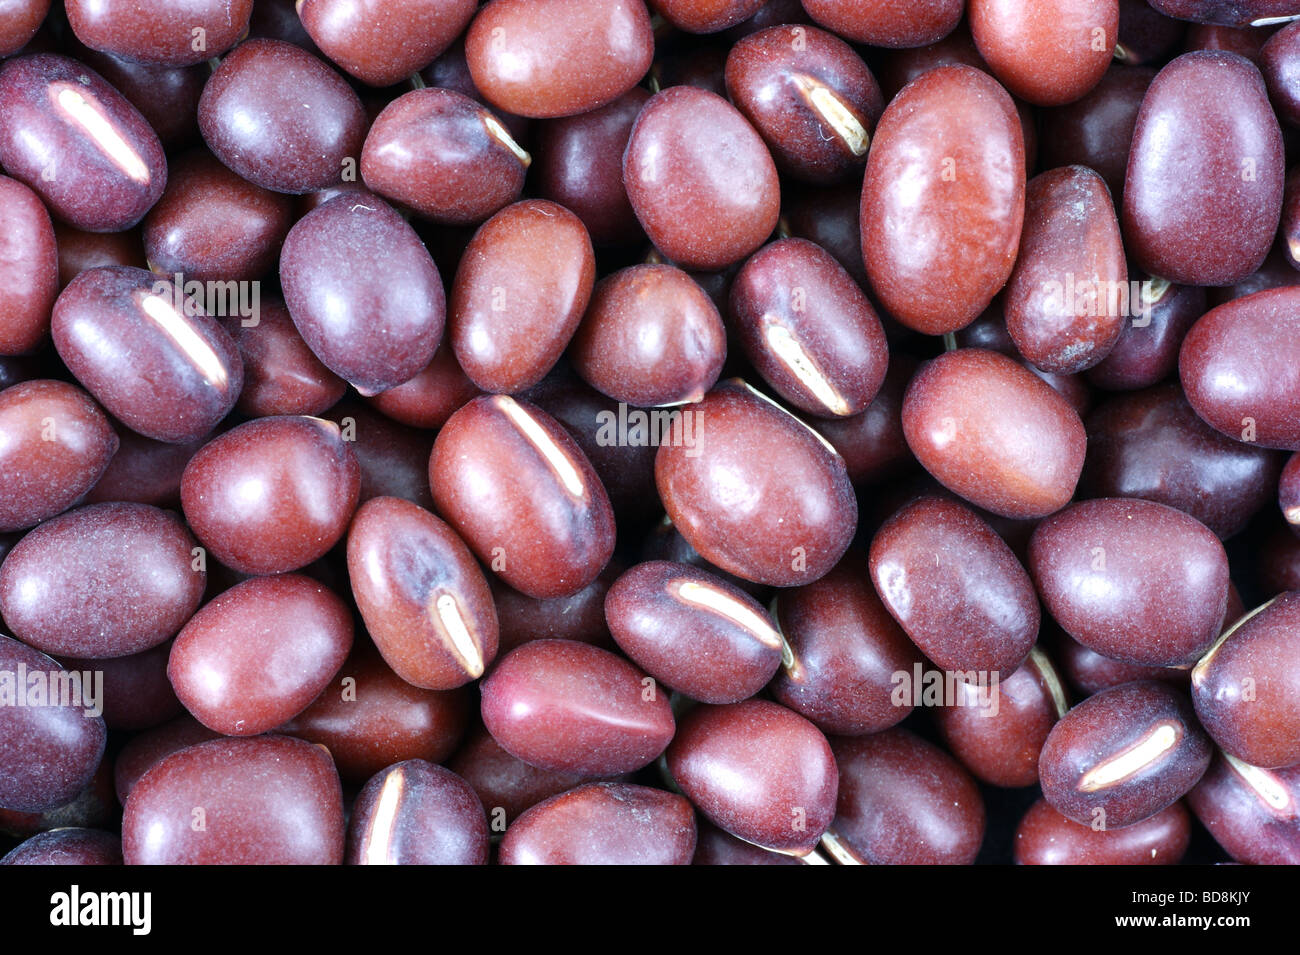 Organic Adzuki beans close view Stock Photo